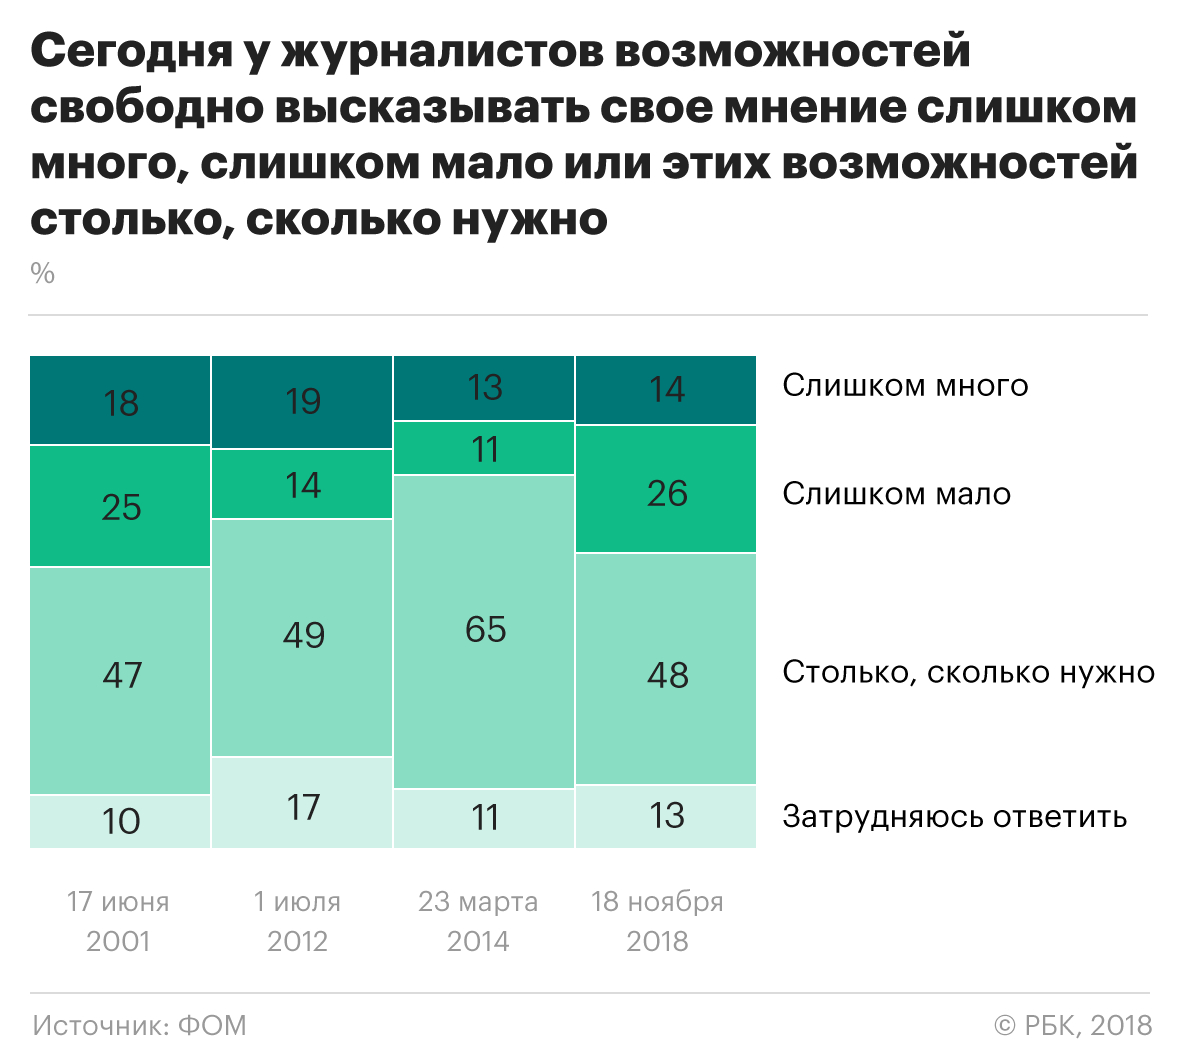 Социологи зафиксировали снижение доверия россиян к государственным СМИ